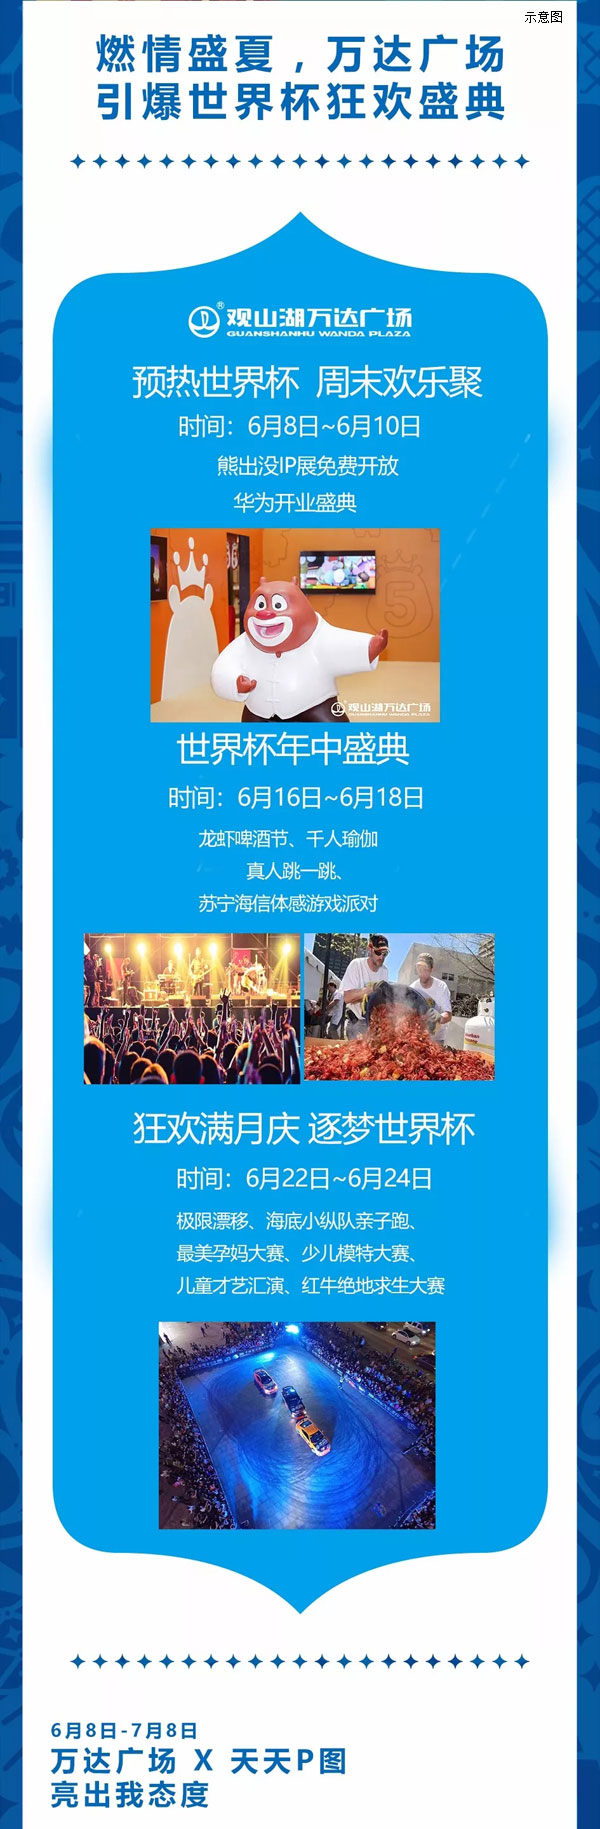 燃情盛夏 观山湖万达广场引爆世界杯狂欢盛典-中国网地产